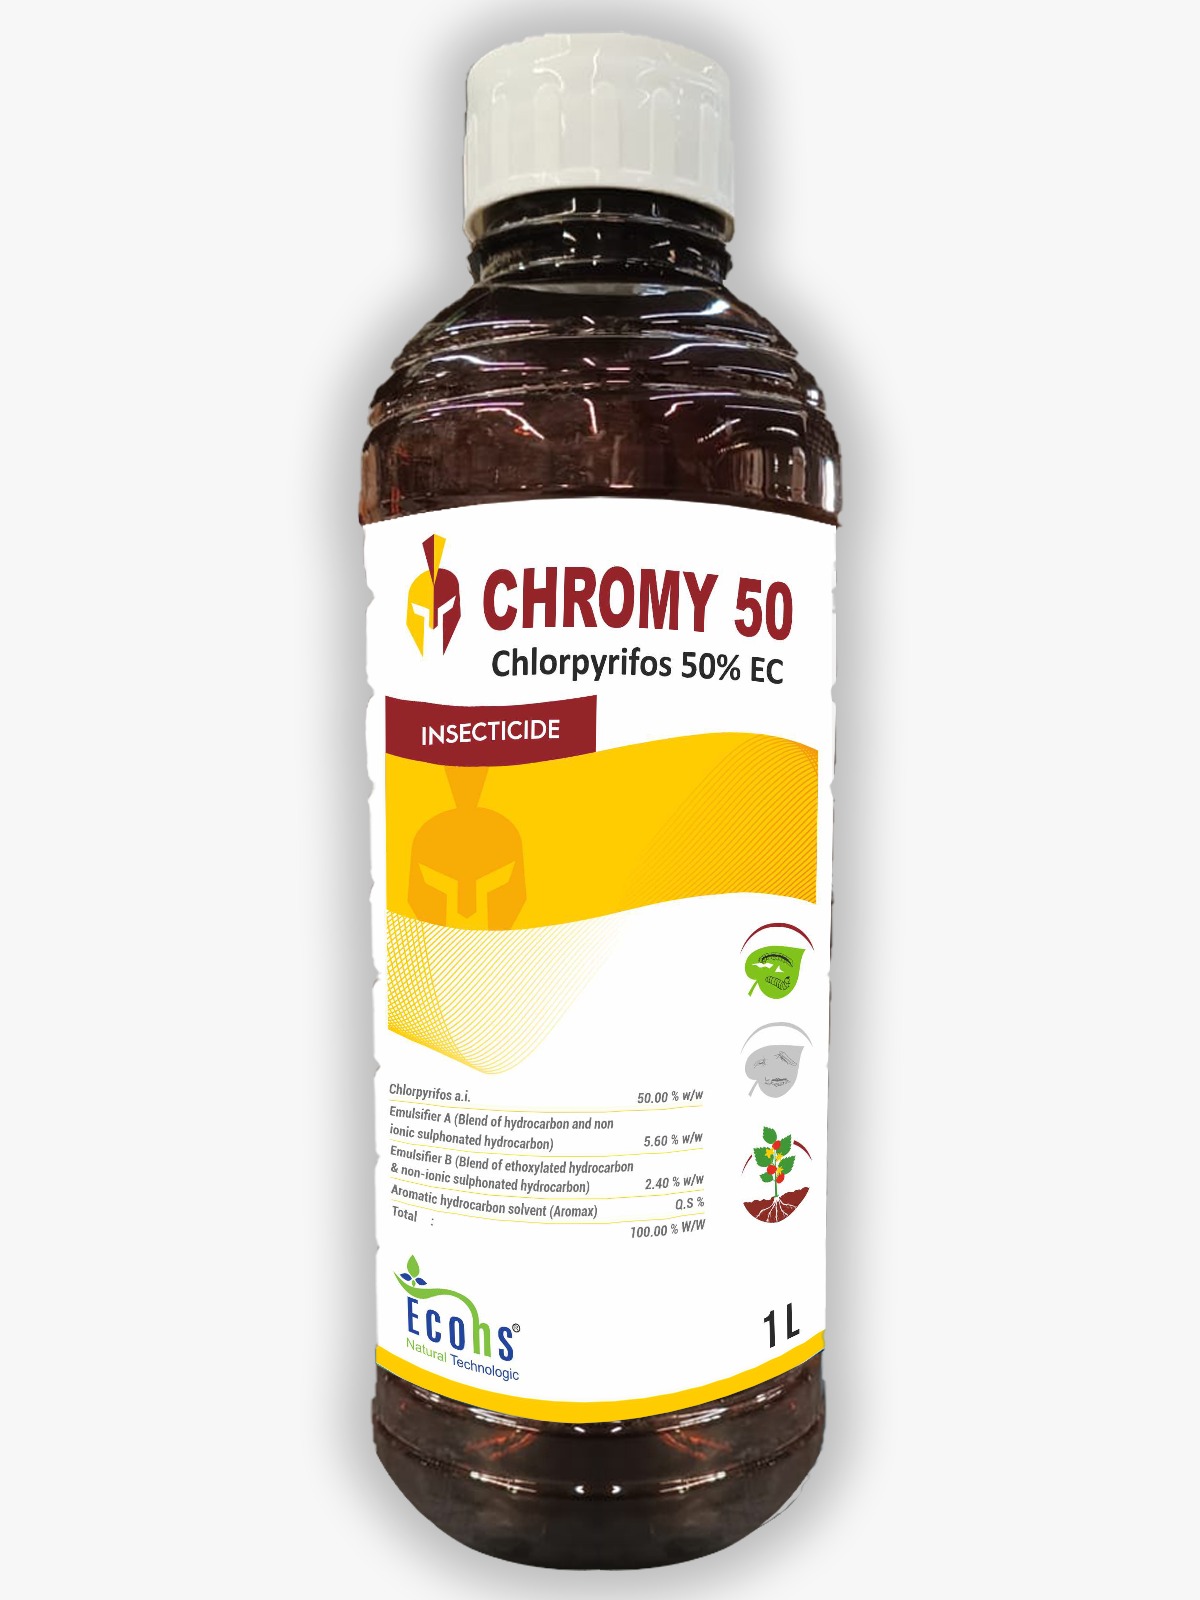 CHROMY 50